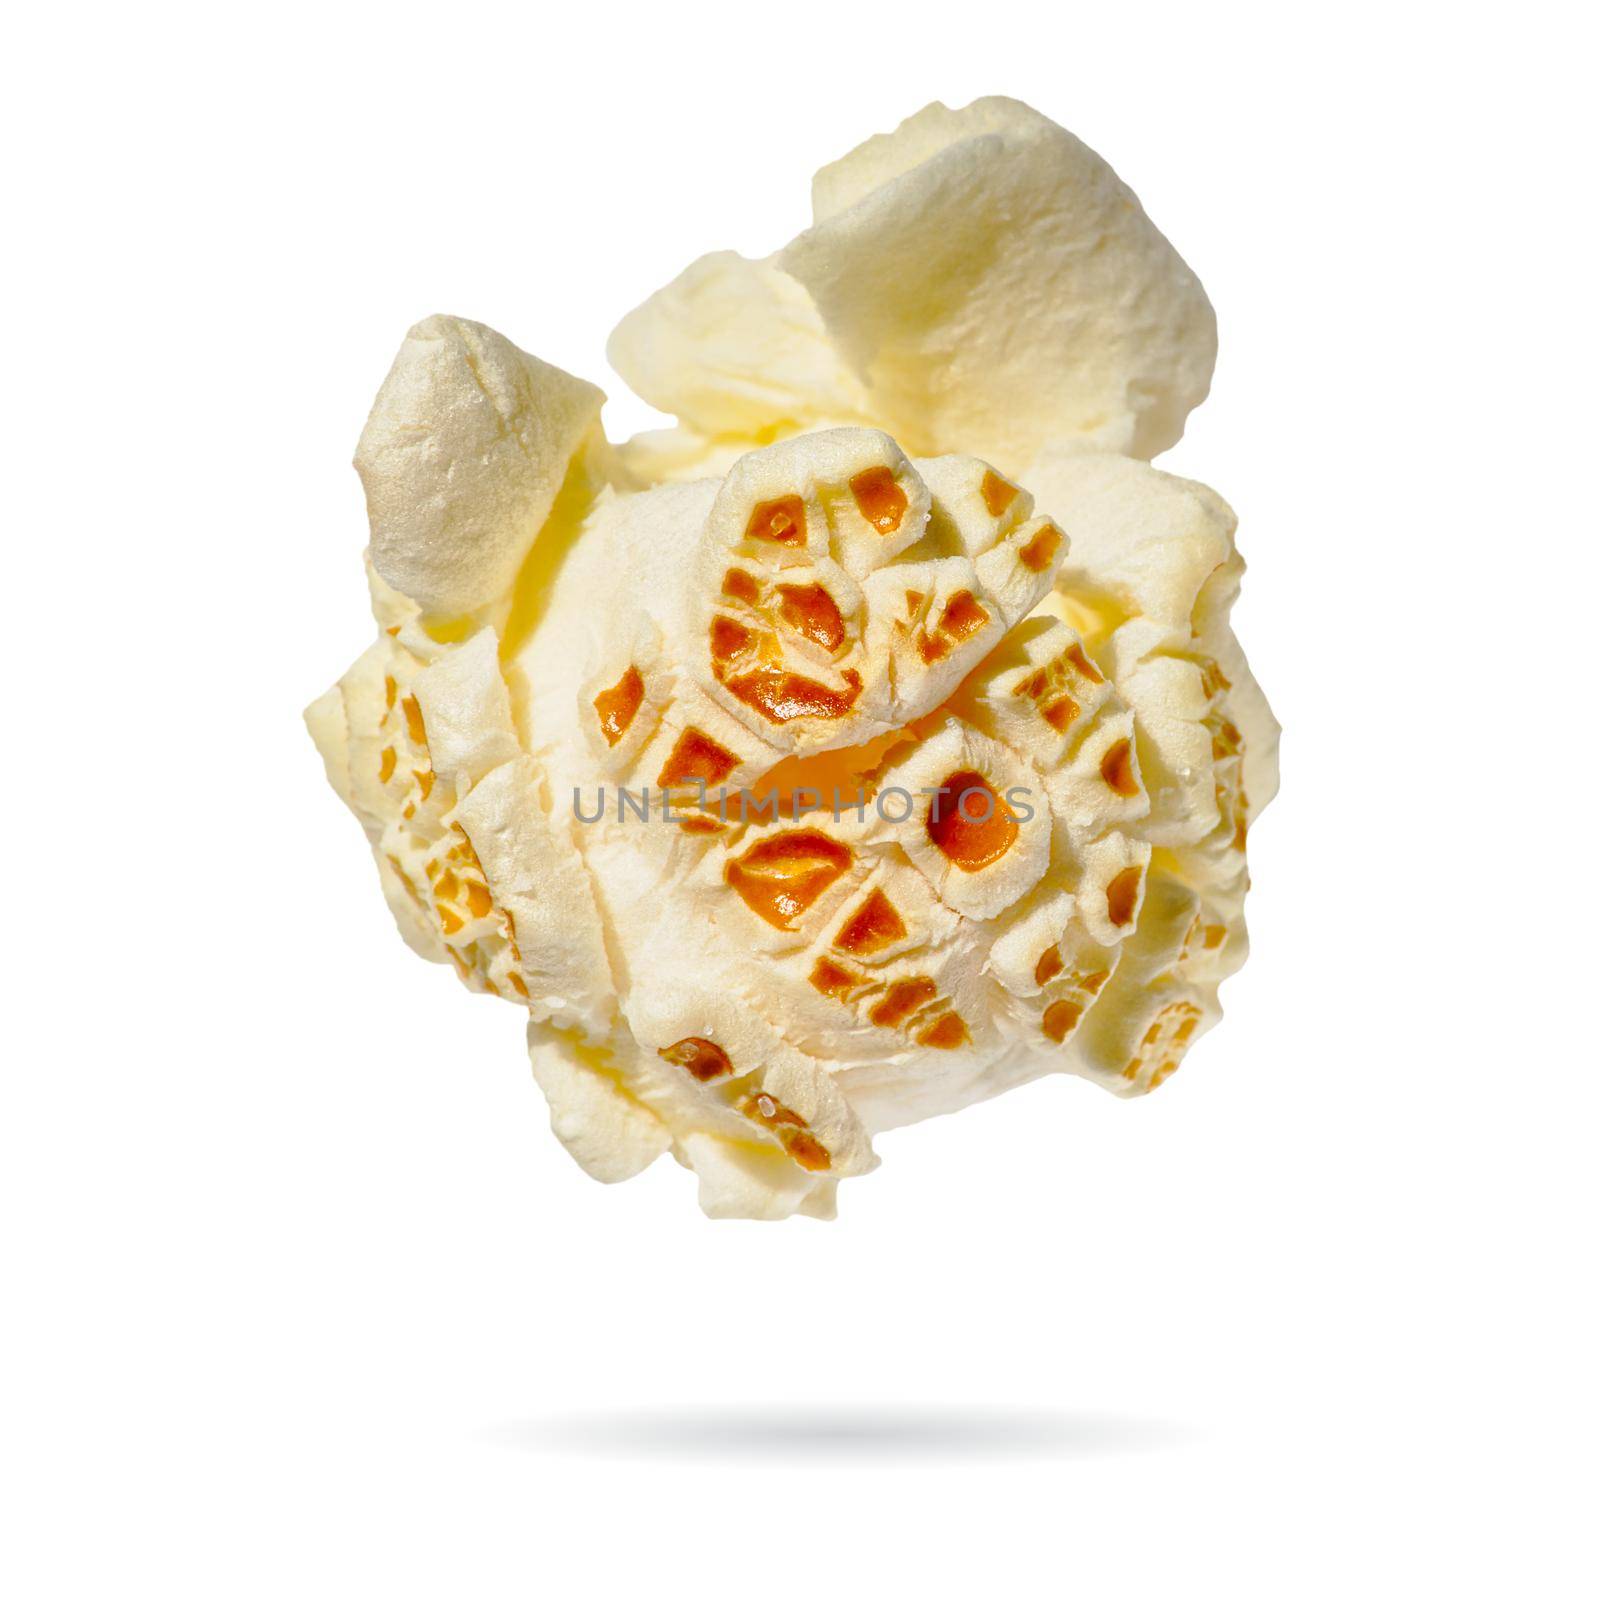 Macro popcorn isolated on white background. single popcorn